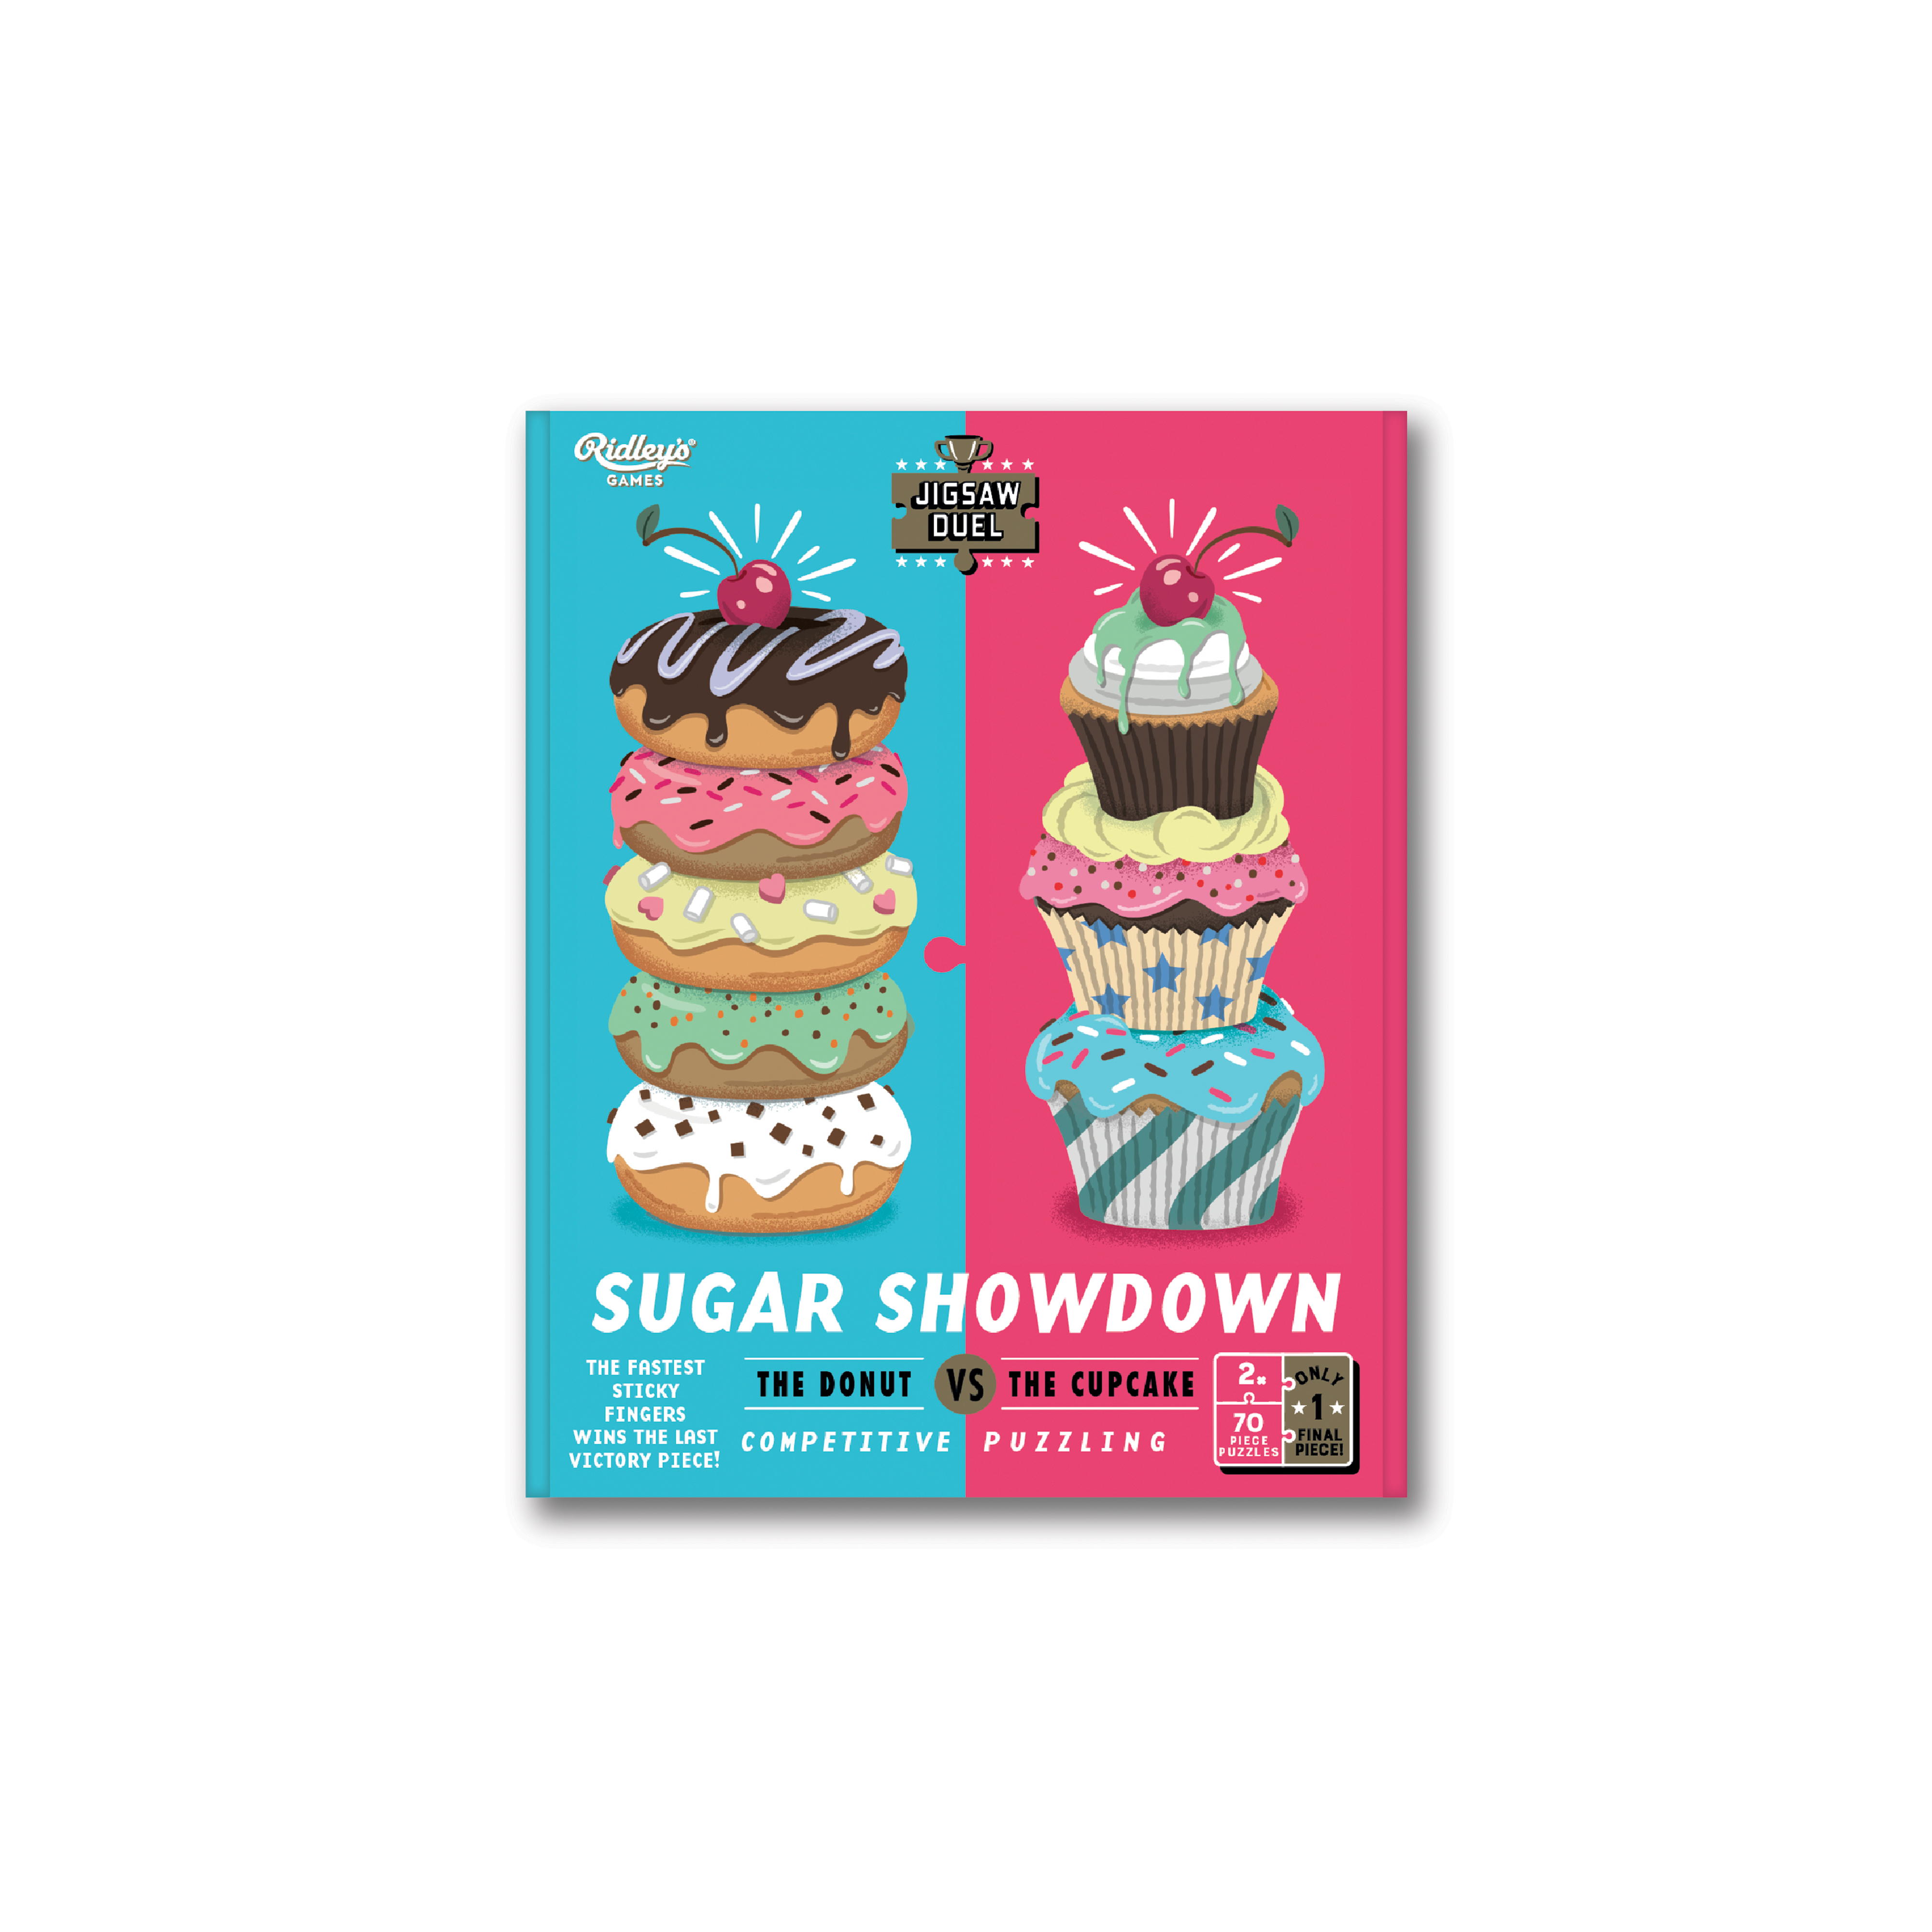 Jigsaw Duel Sugar Showdown